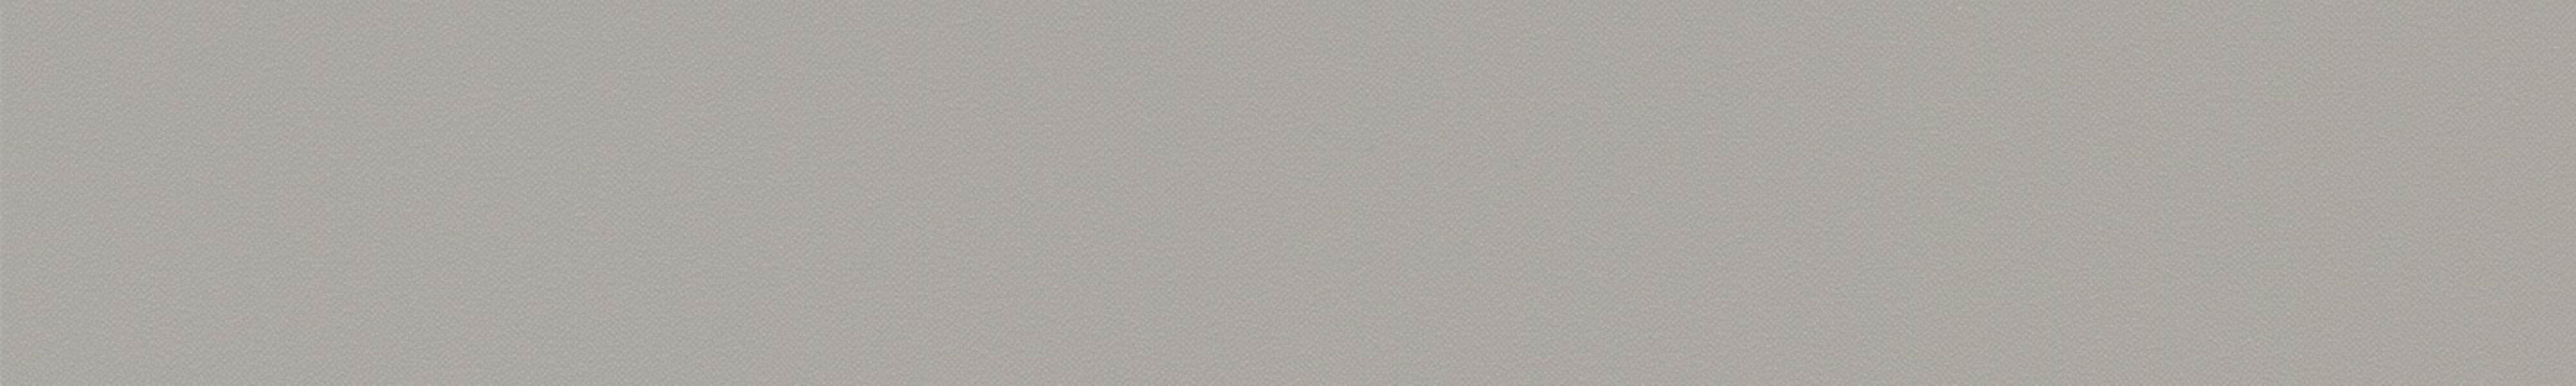 skai® colore classico ULTRA stone grey   0,35 1440